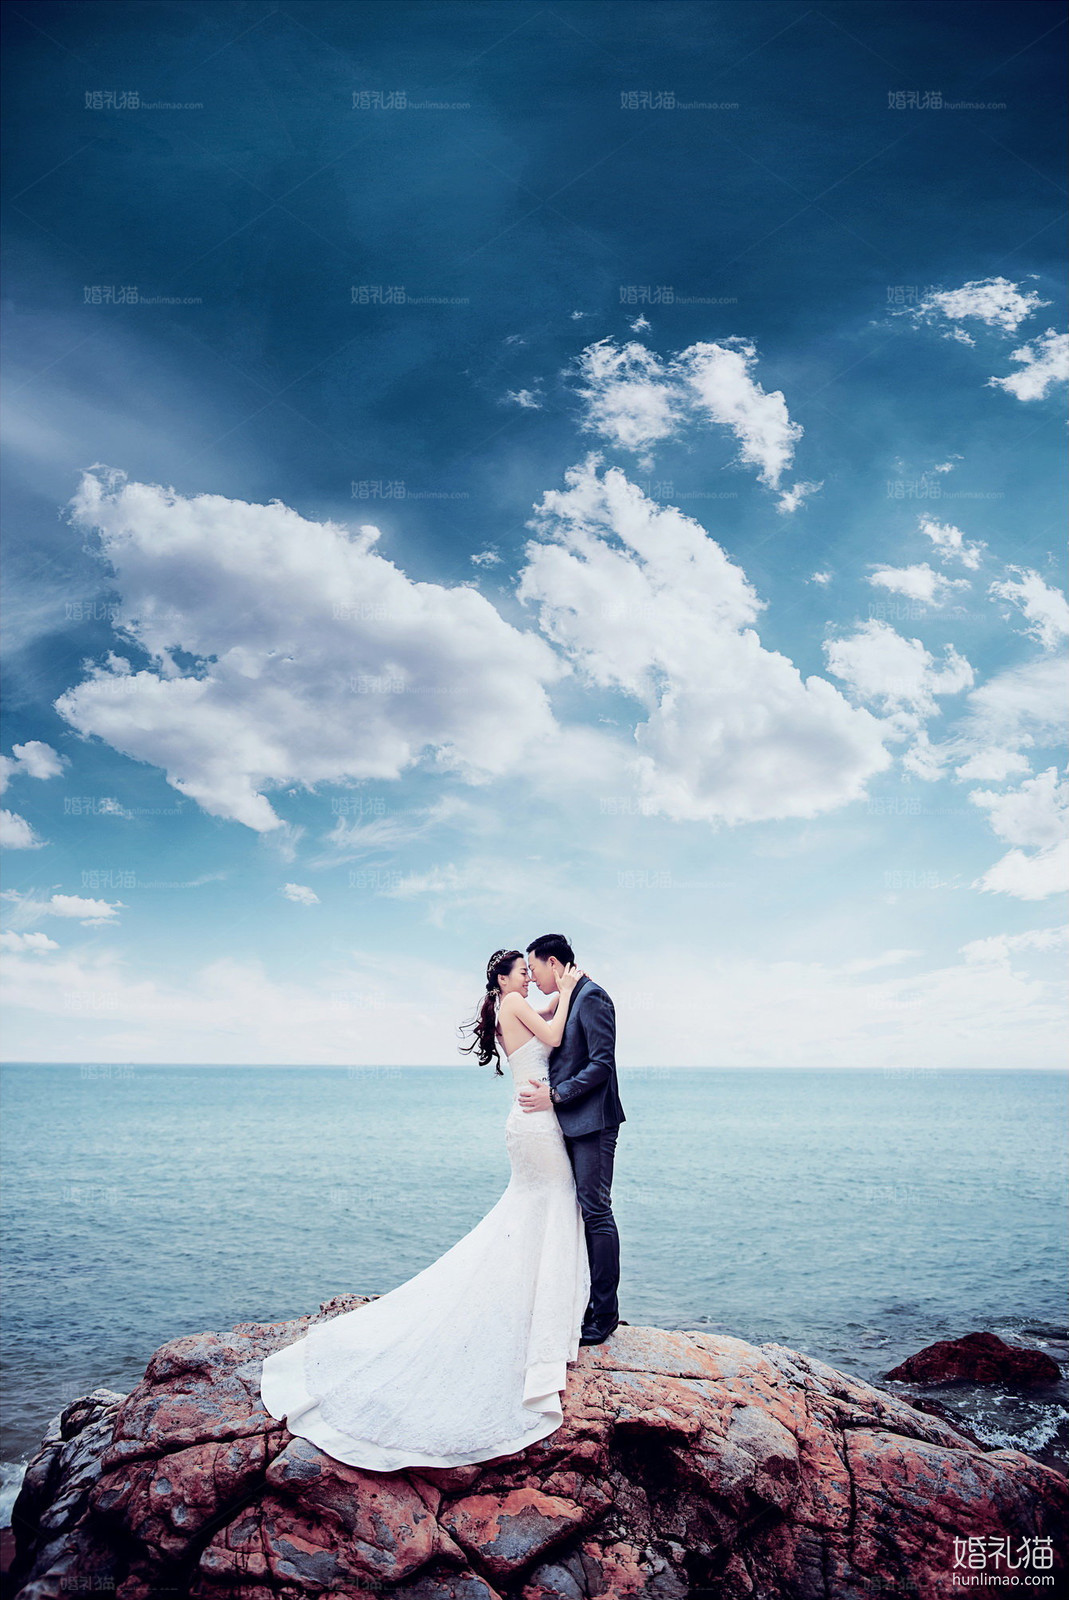 海景结婚照,[海景, 礁石],肇庆婚纱照,婚纱照图片